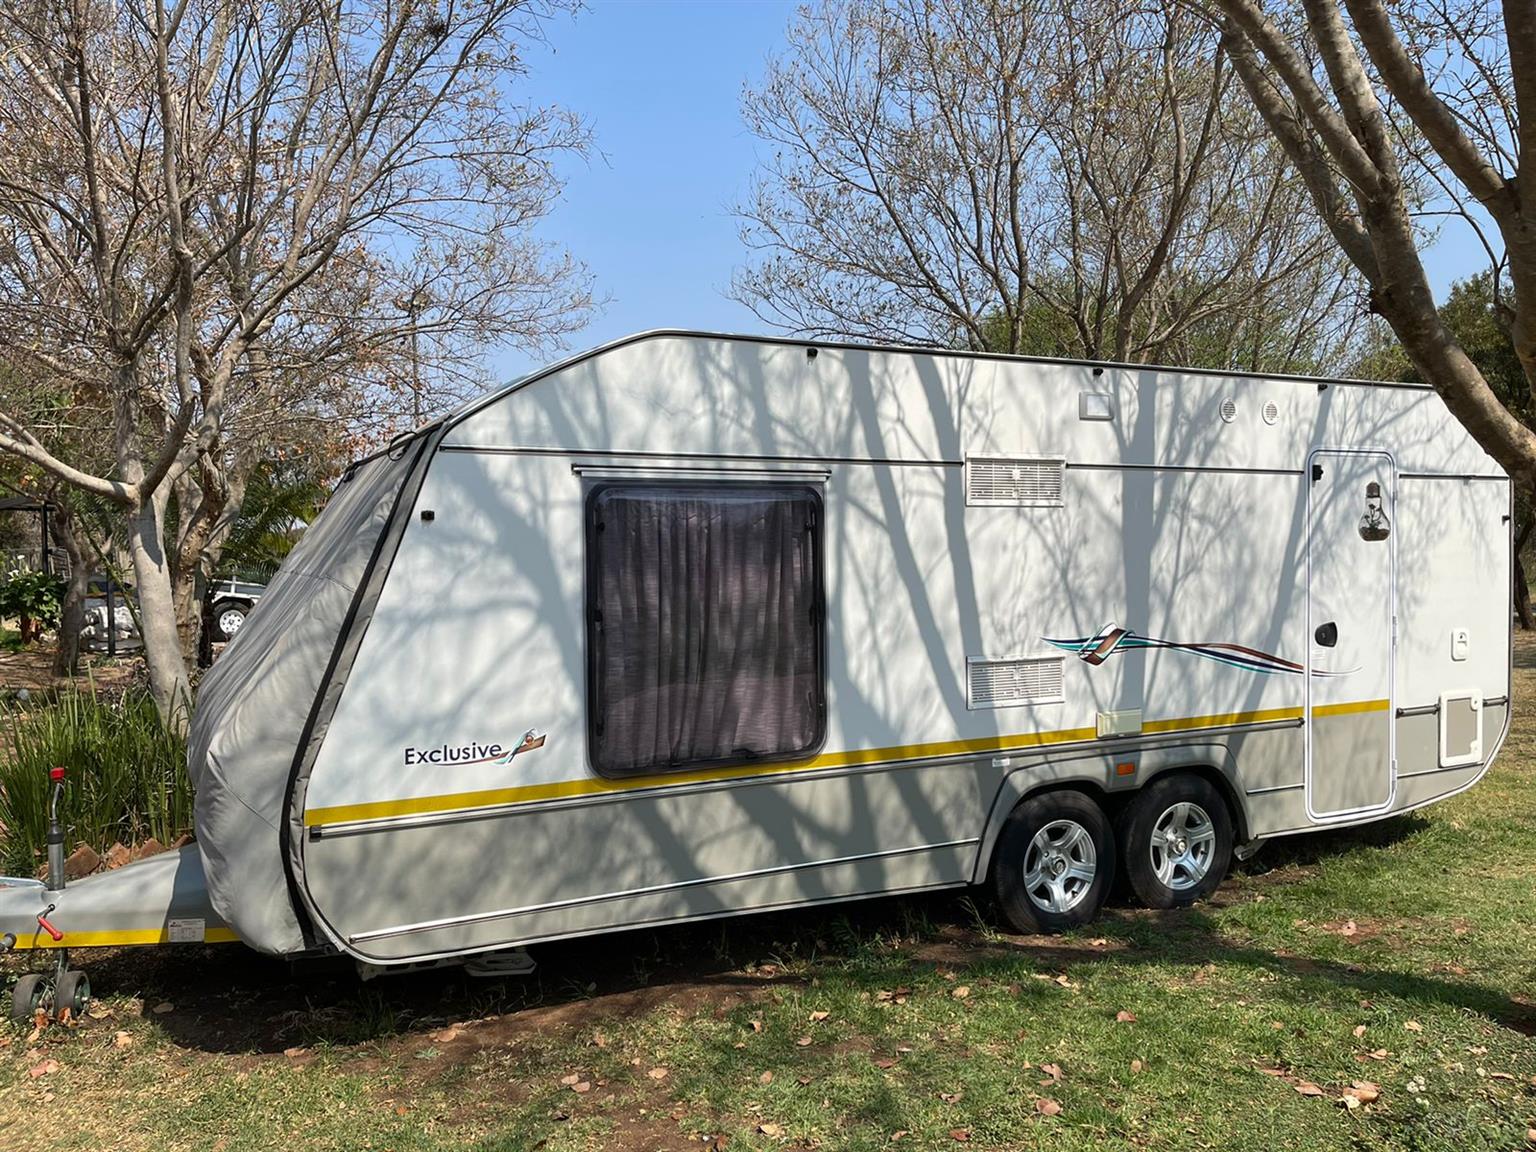 Jurgens Exclusive caravan 2018 model in very good condition, aircon,movers,etc 